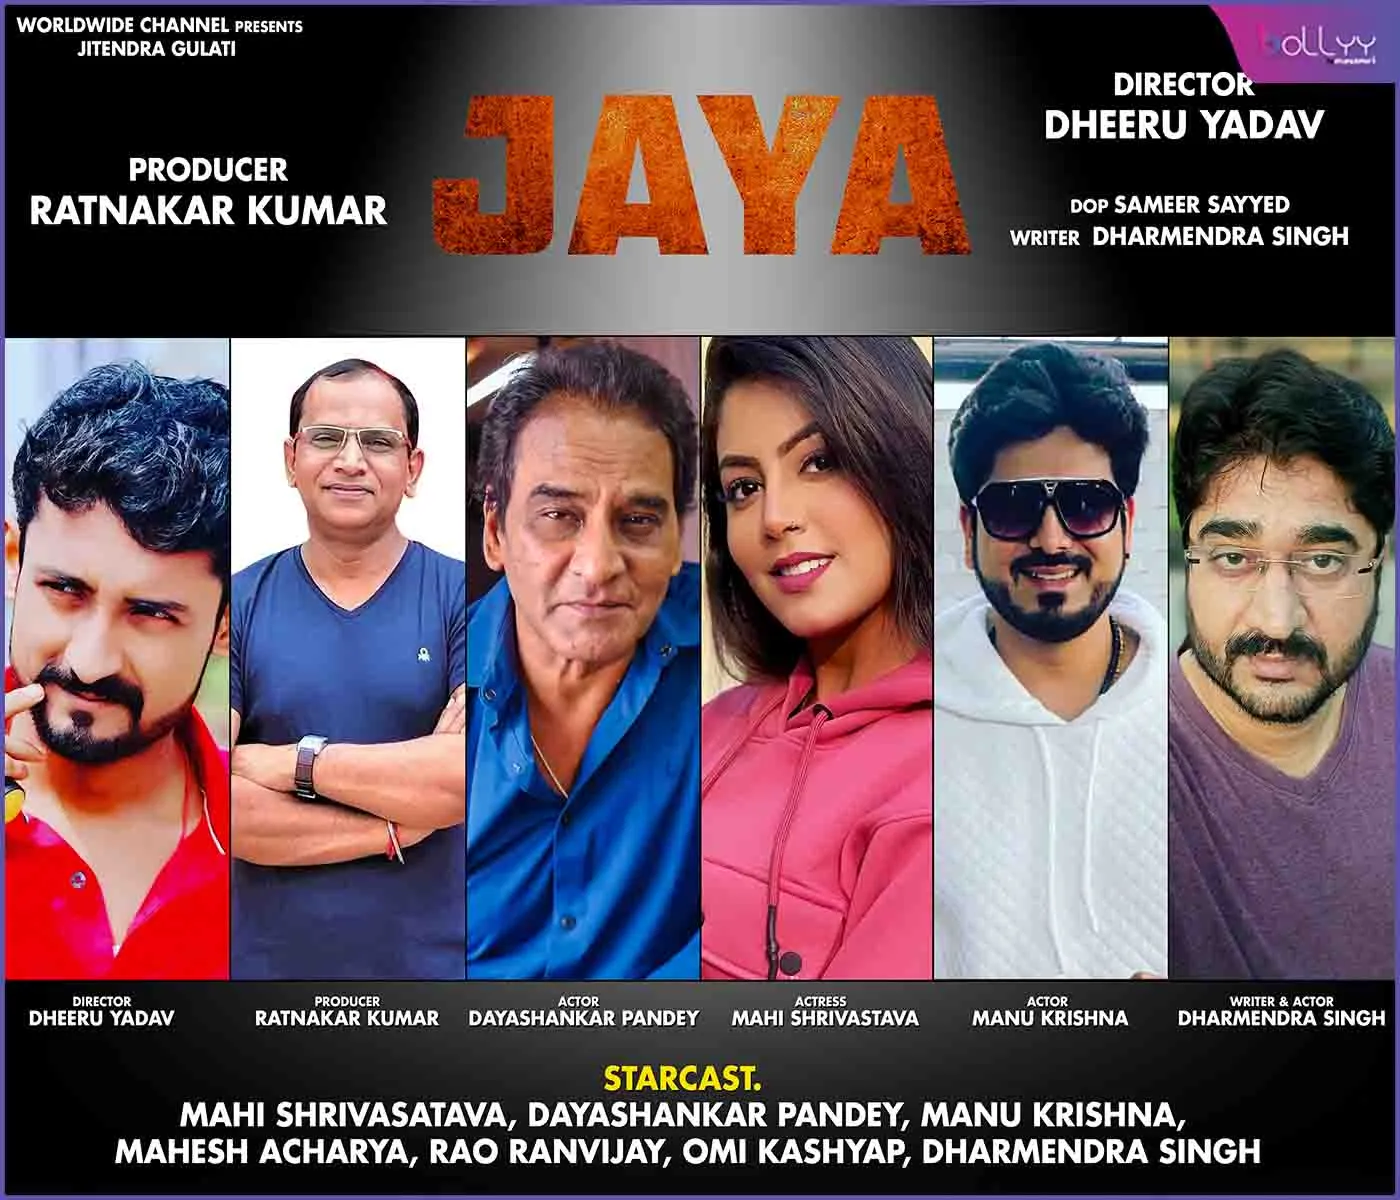 producer Ratnakar Kumar's Bhojpuri film Jaya